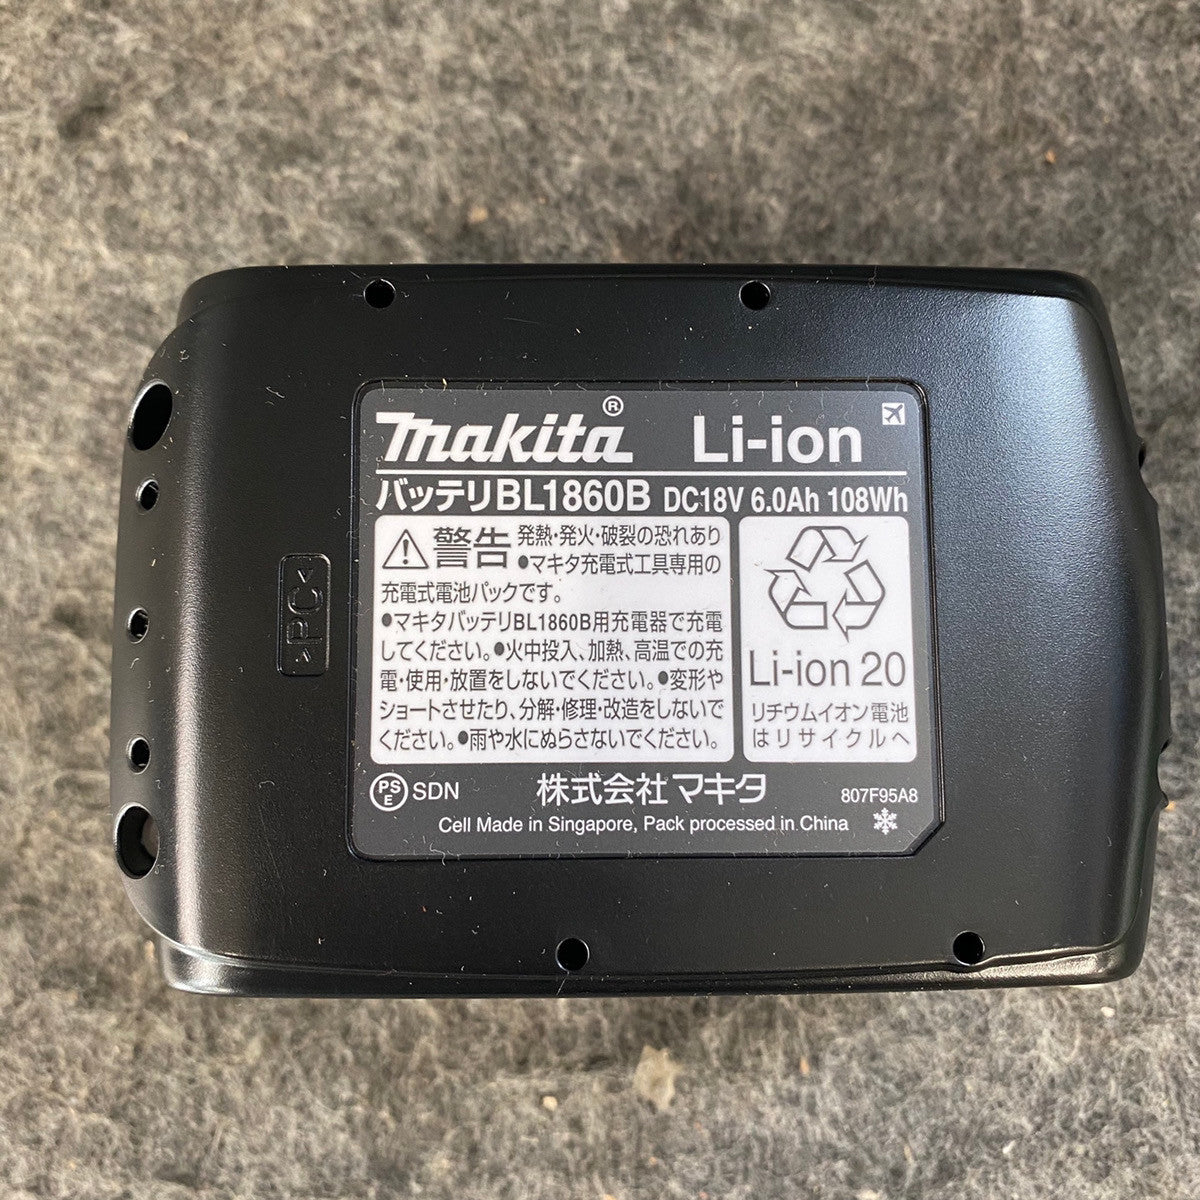 マキタ『リチウムイオンバッテリ 18V 5.0Ah 黒』BL1850B バッテリー 1週間保証